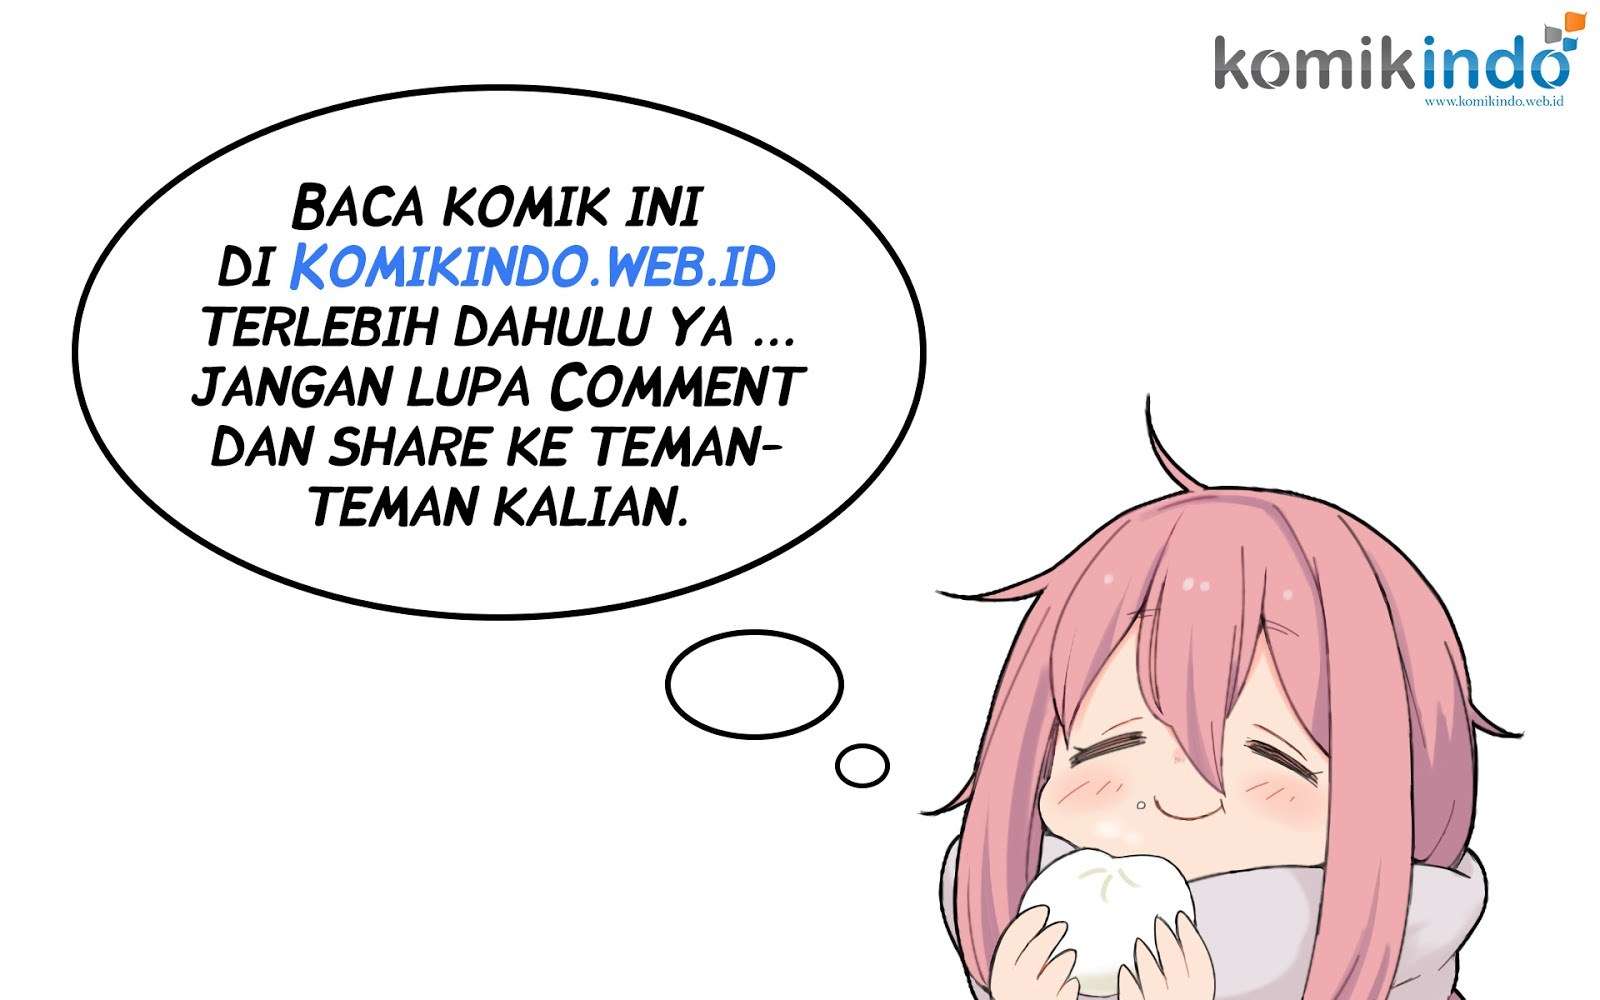 Jujutsu Kaisen Chapter 16 Bahasa Indonesia